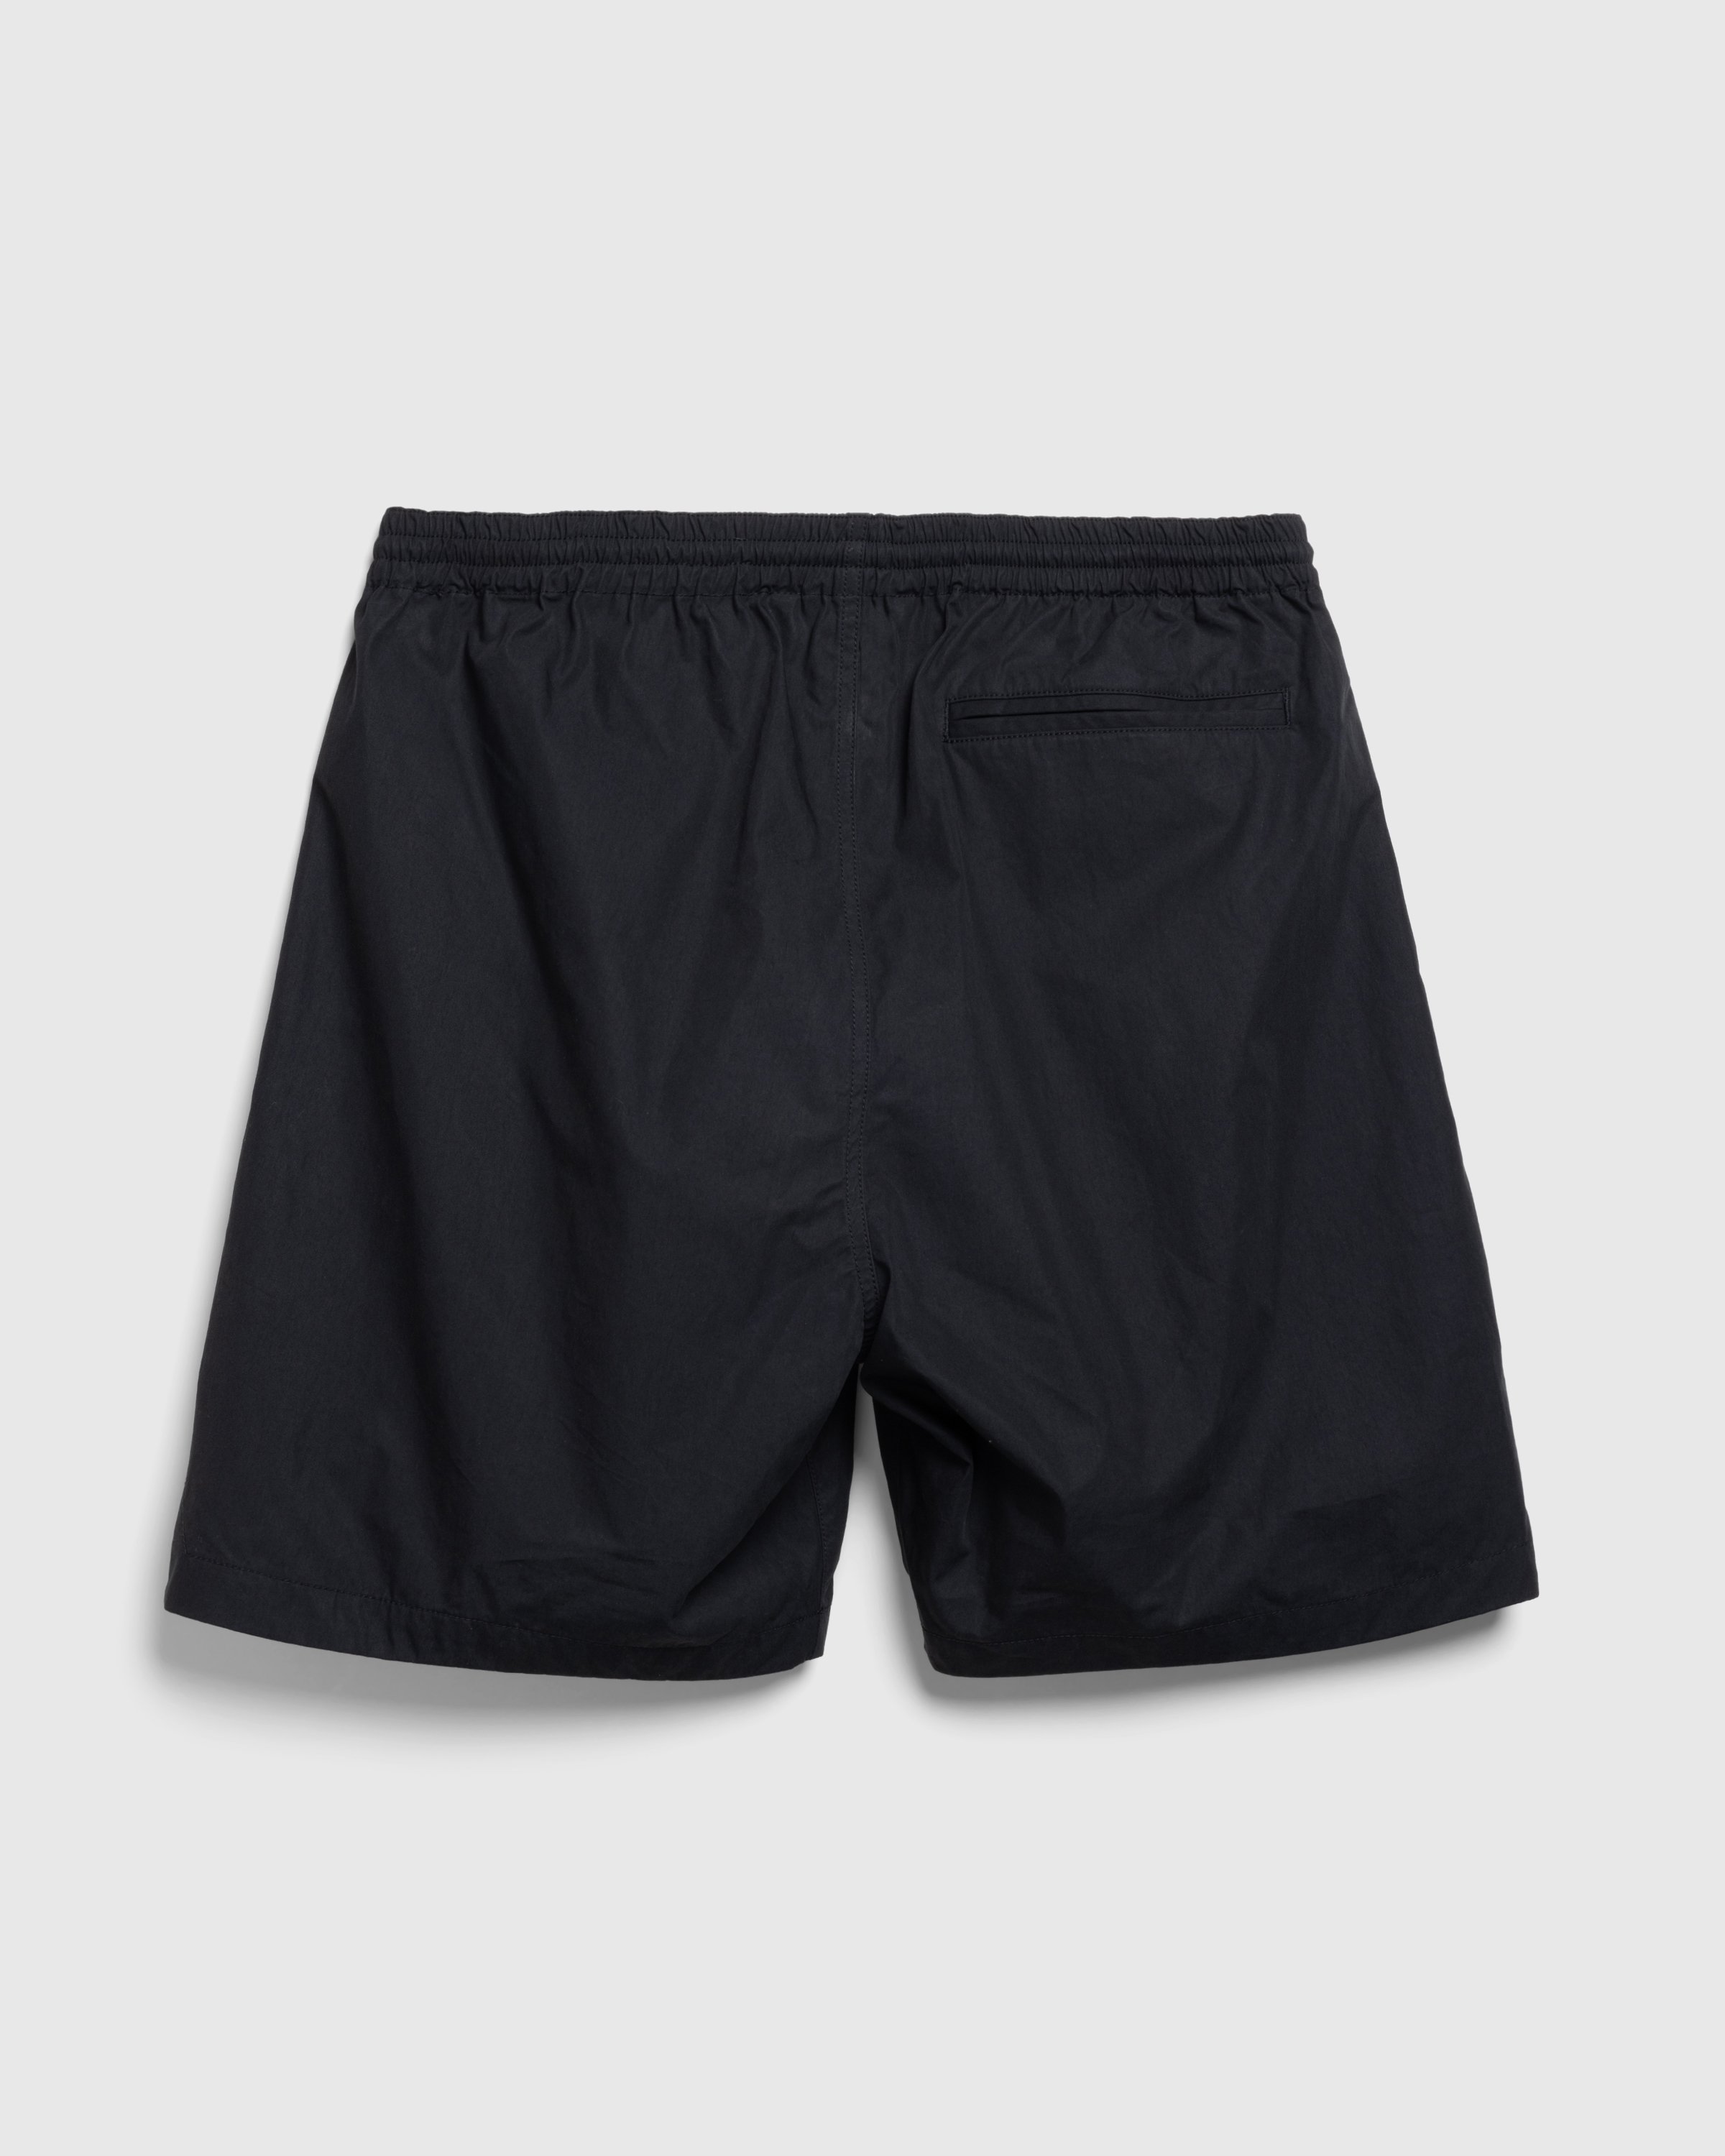 Highsnobiety HS05 - Weather Cloth Nylon Shorts Black - Clothing - Black - Image 2